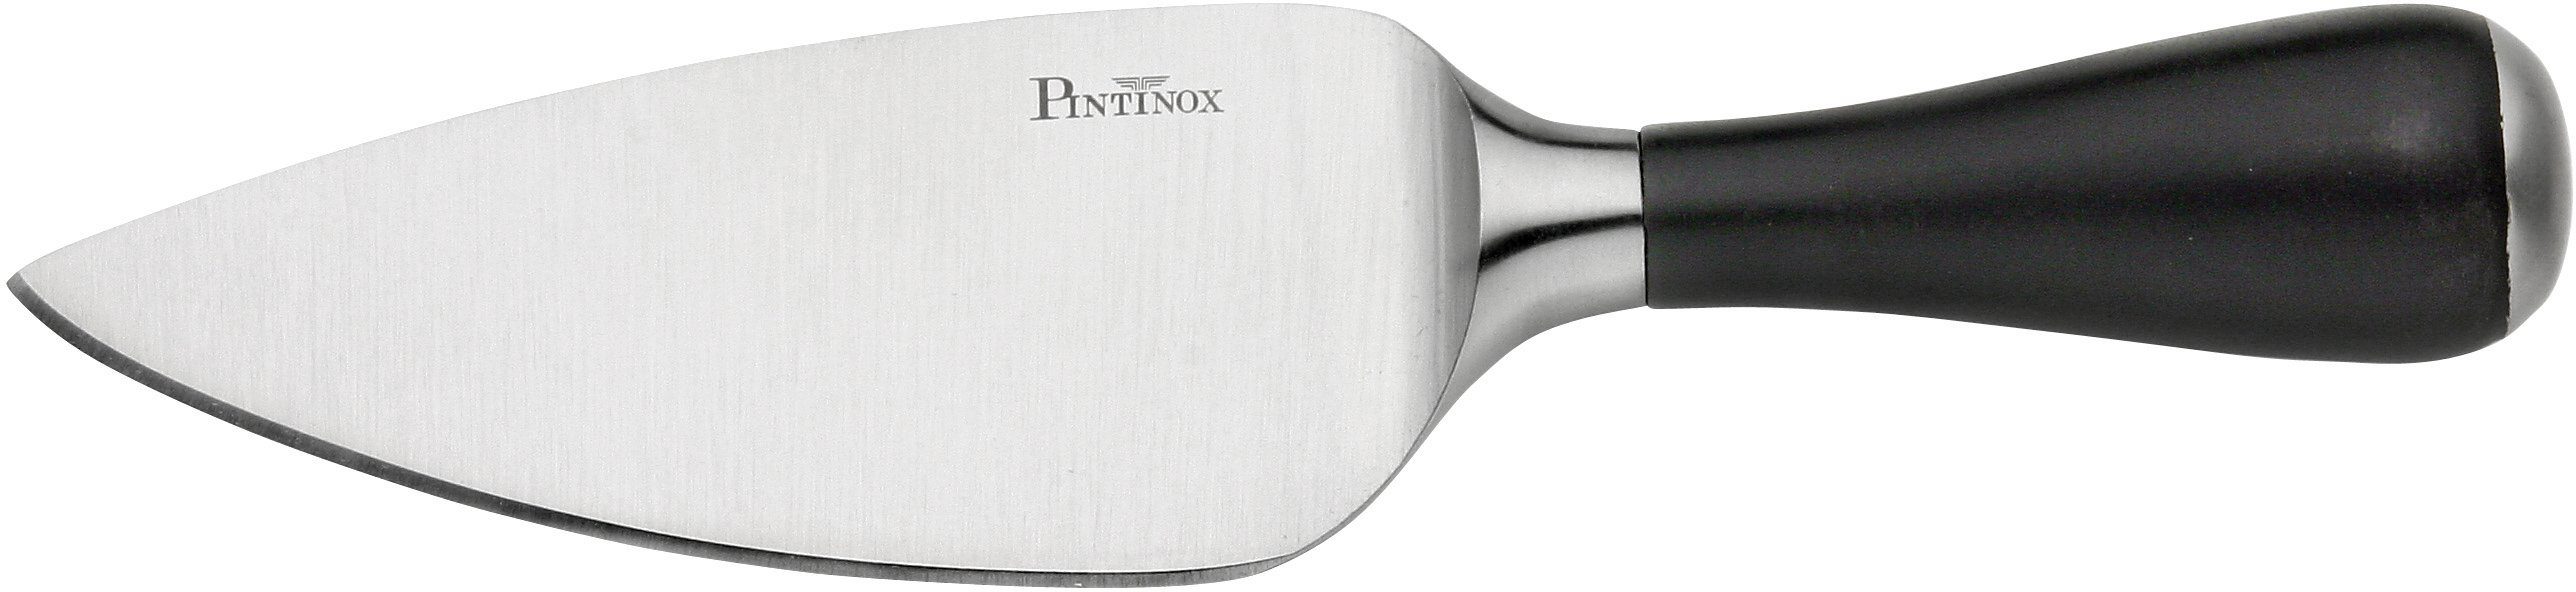 PINTINOX Allzweckmesser Coltelli Parmesankäsemesser Edelstahl/Kunststoff Professional, Gemüsemesser, und